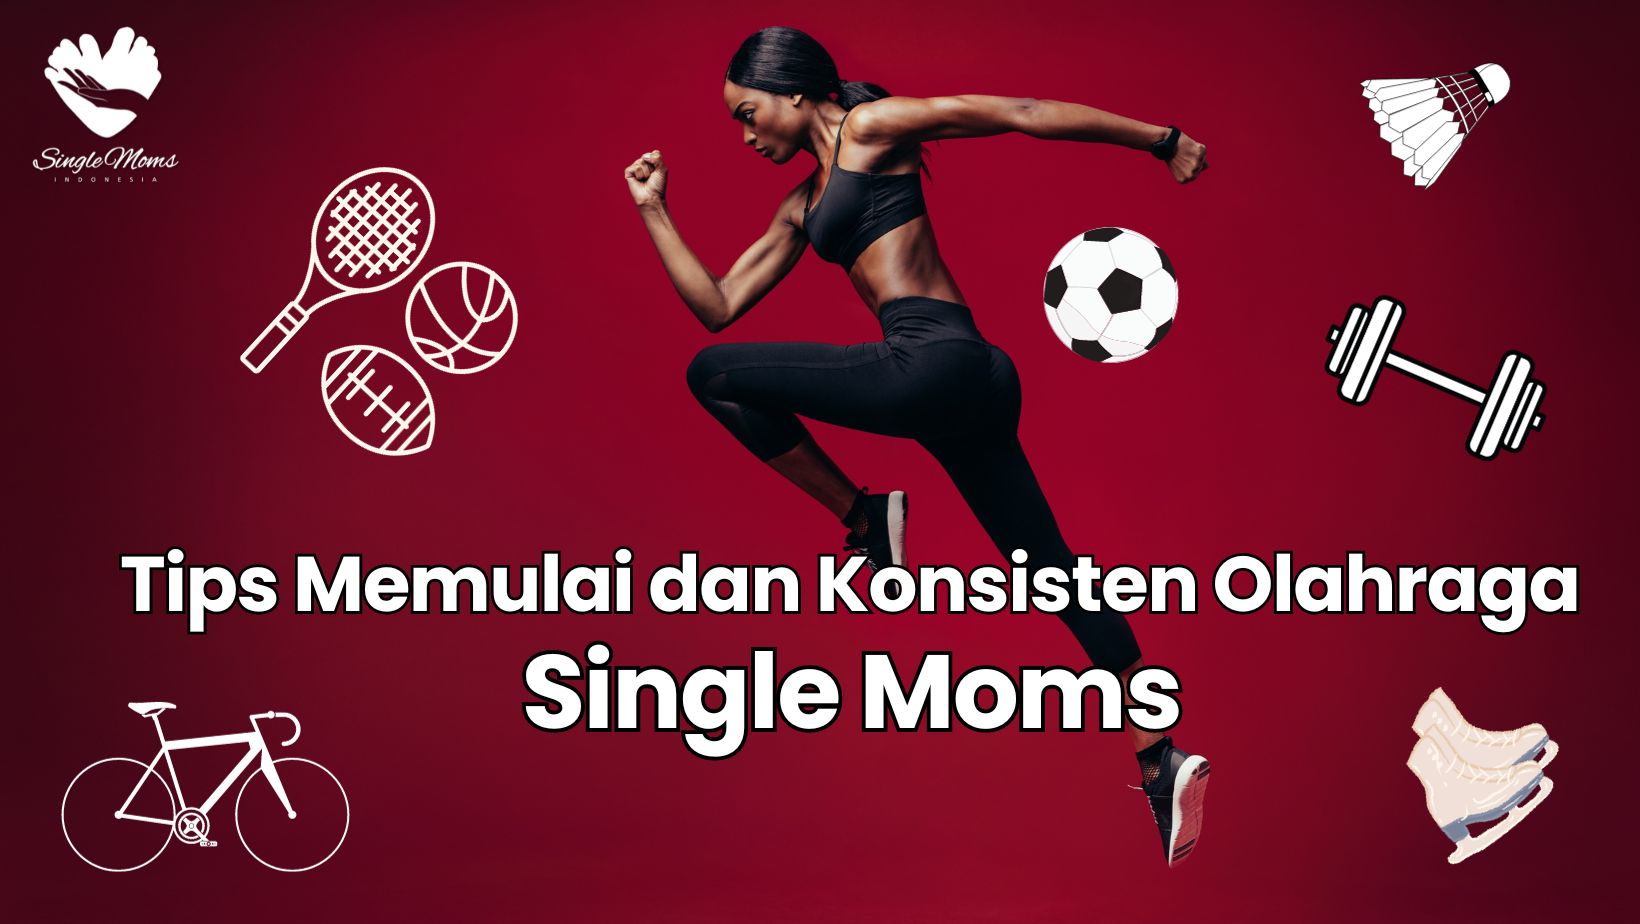 Tips Memulai dan Konsisten Olahraga untuk Single Moms